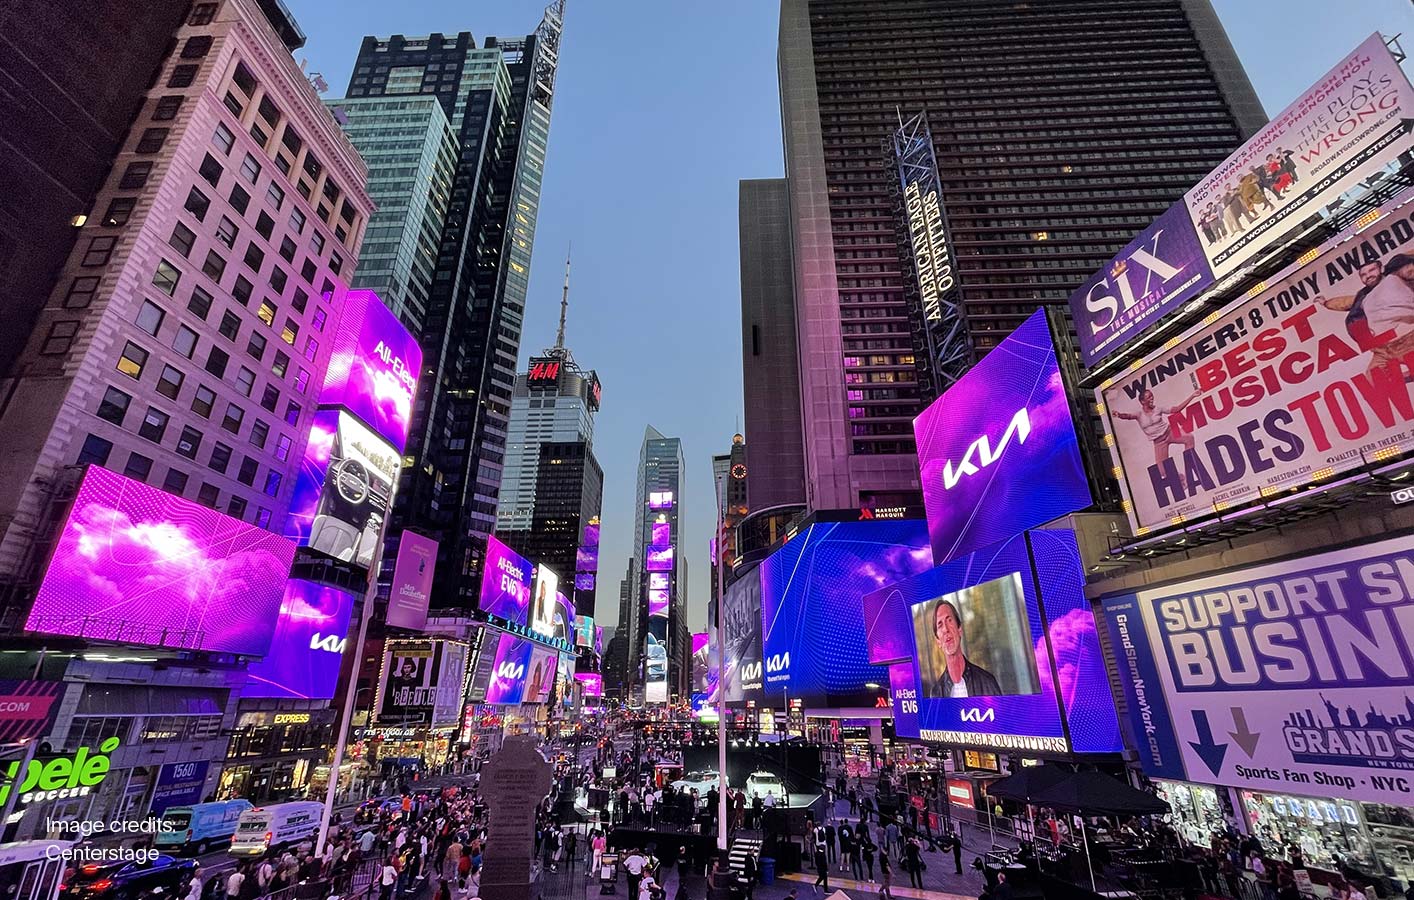 Kia Times Square takeover